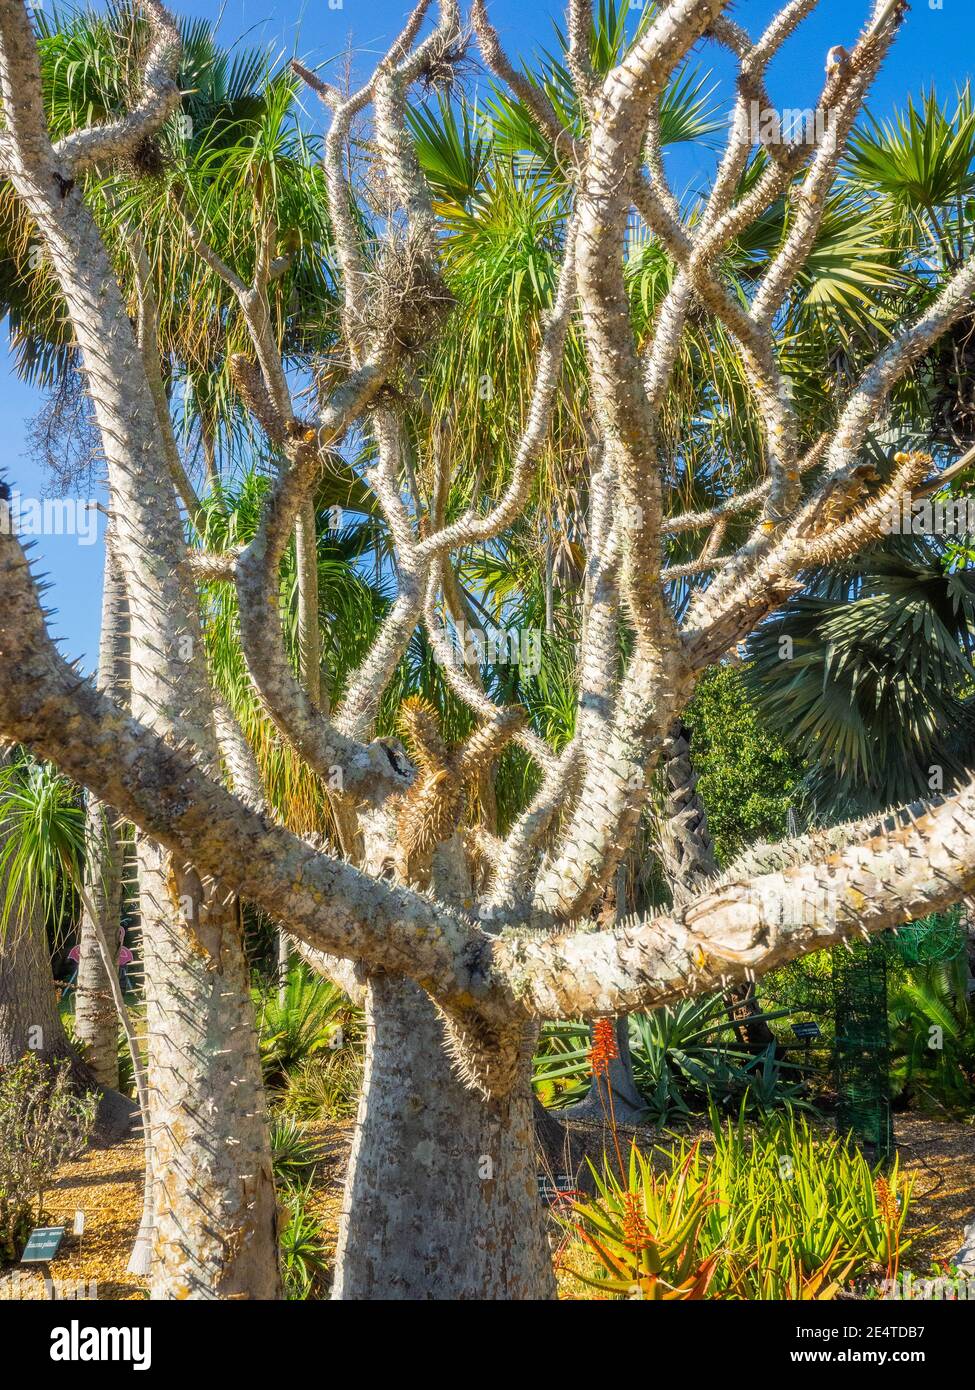 Madagaskar-Palme (Pachypodium lamerei) ist eine blühende Pflanze aus der  Familie der Apocynaceae. Es ist ein Stamm Sukkulente, Photosynthese vor  allem durch Stockfotografie - Alamy